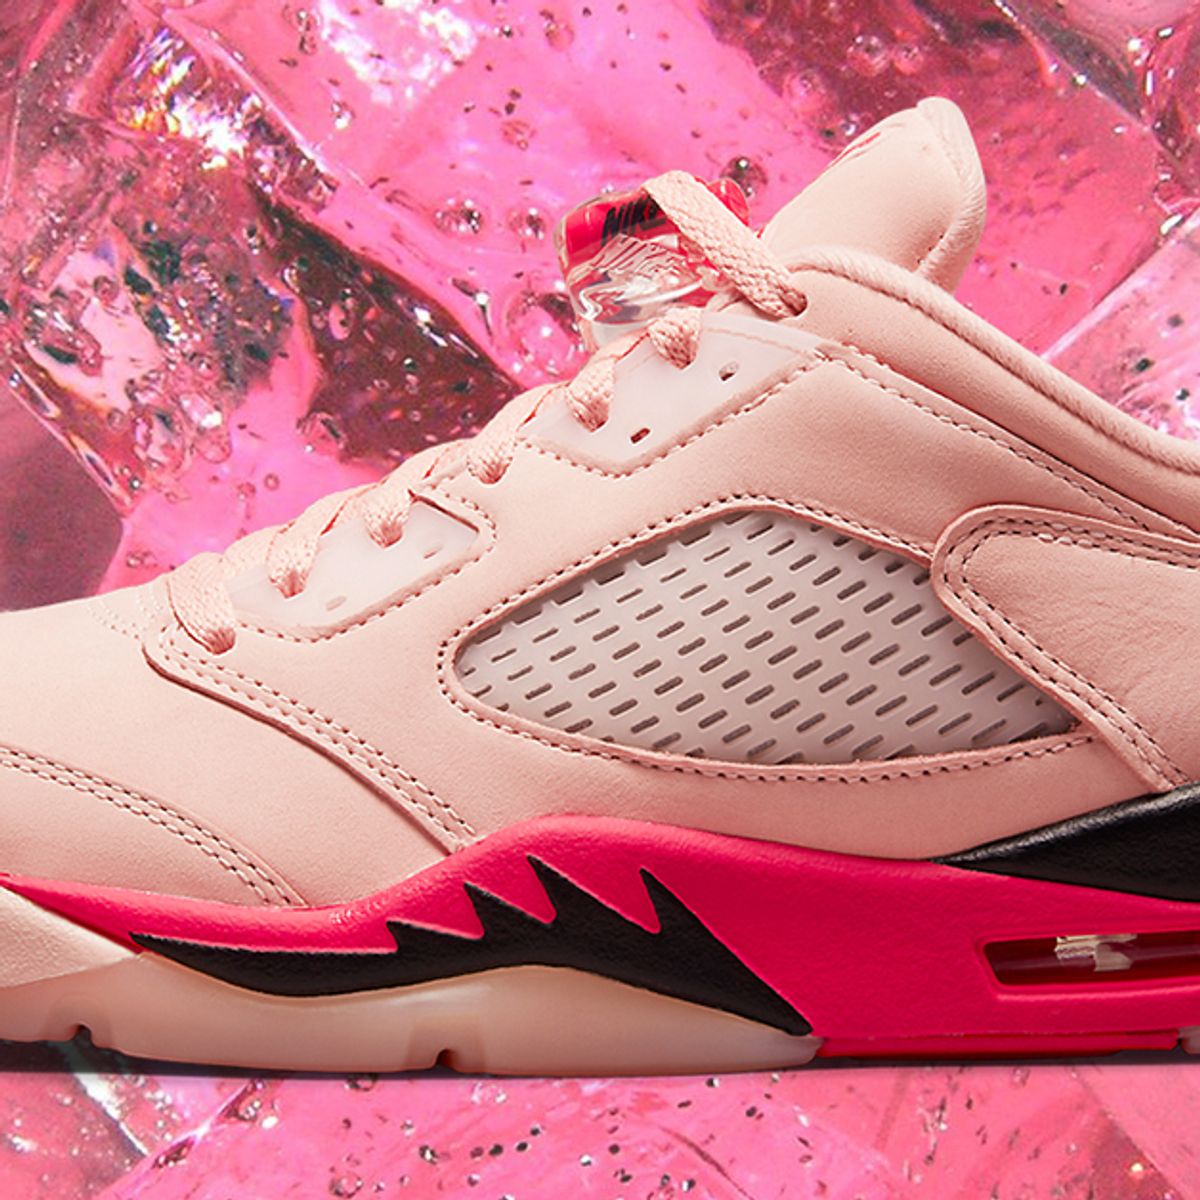 Where pink jordan 5 to Buy: Air Jordan 5 Low 'Arctic Pink' DA8016-806 - Sneaker